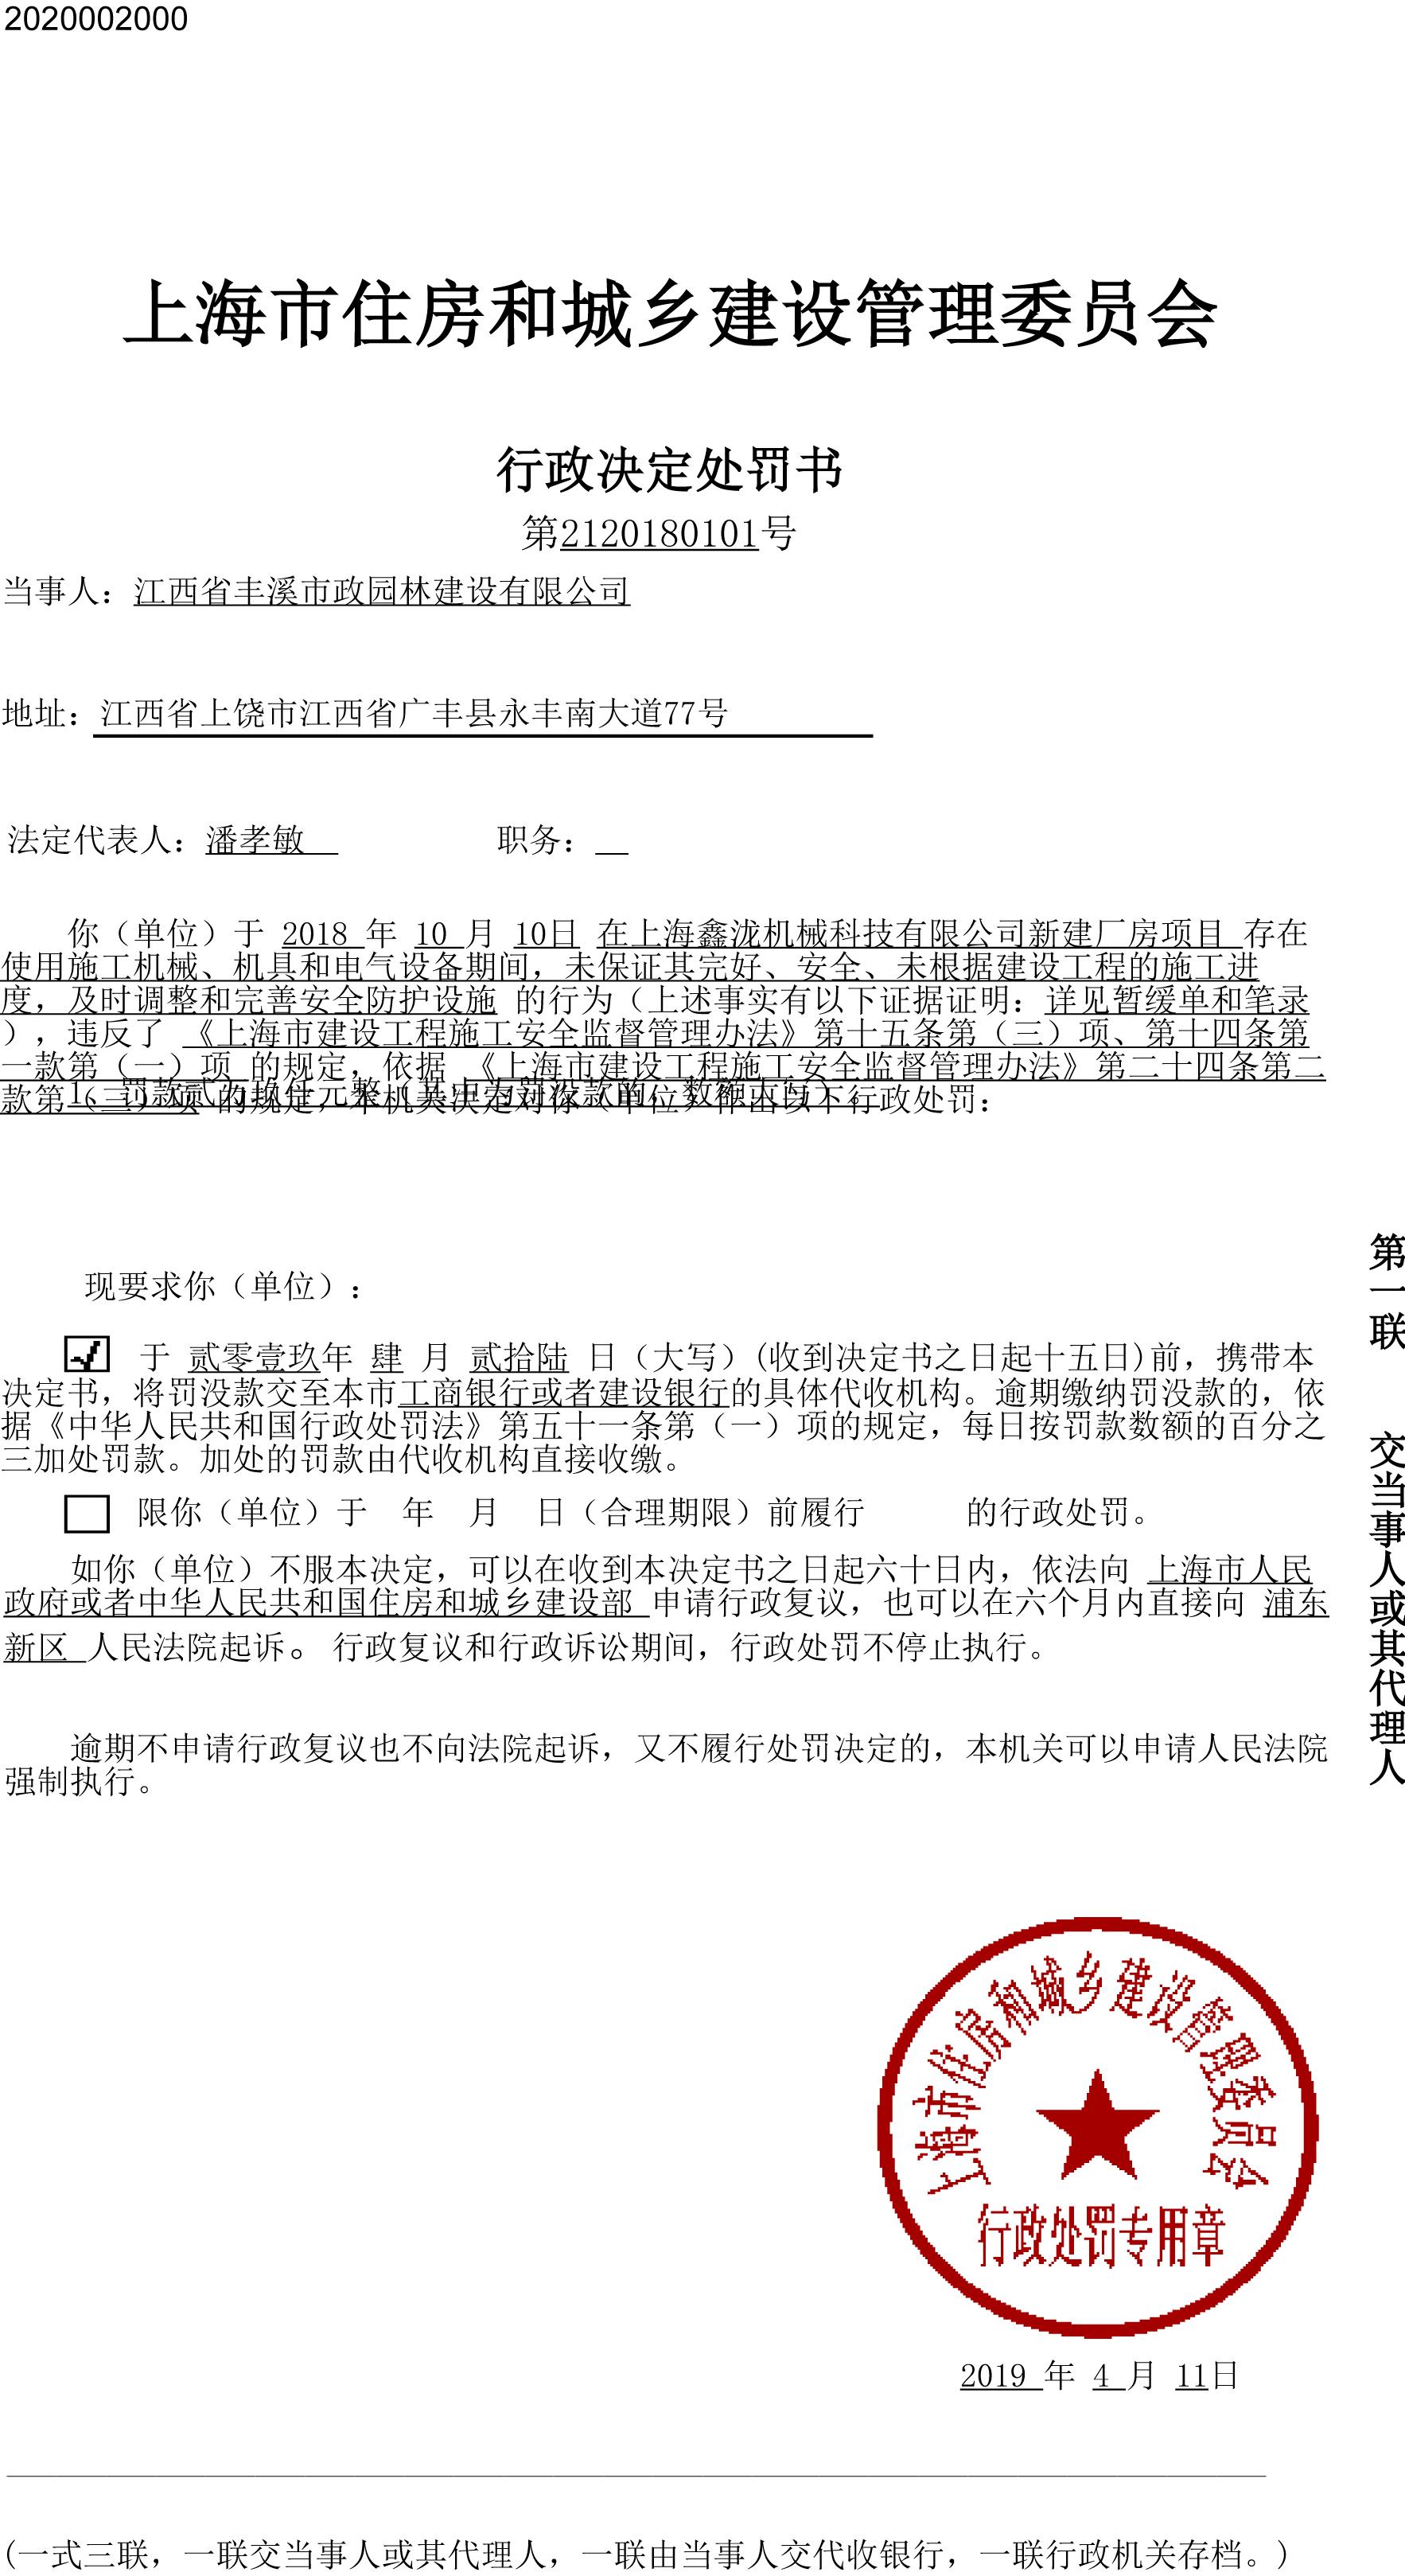 江西省丰溪市政园林建设有限公司违反安全生产相关规定被罚